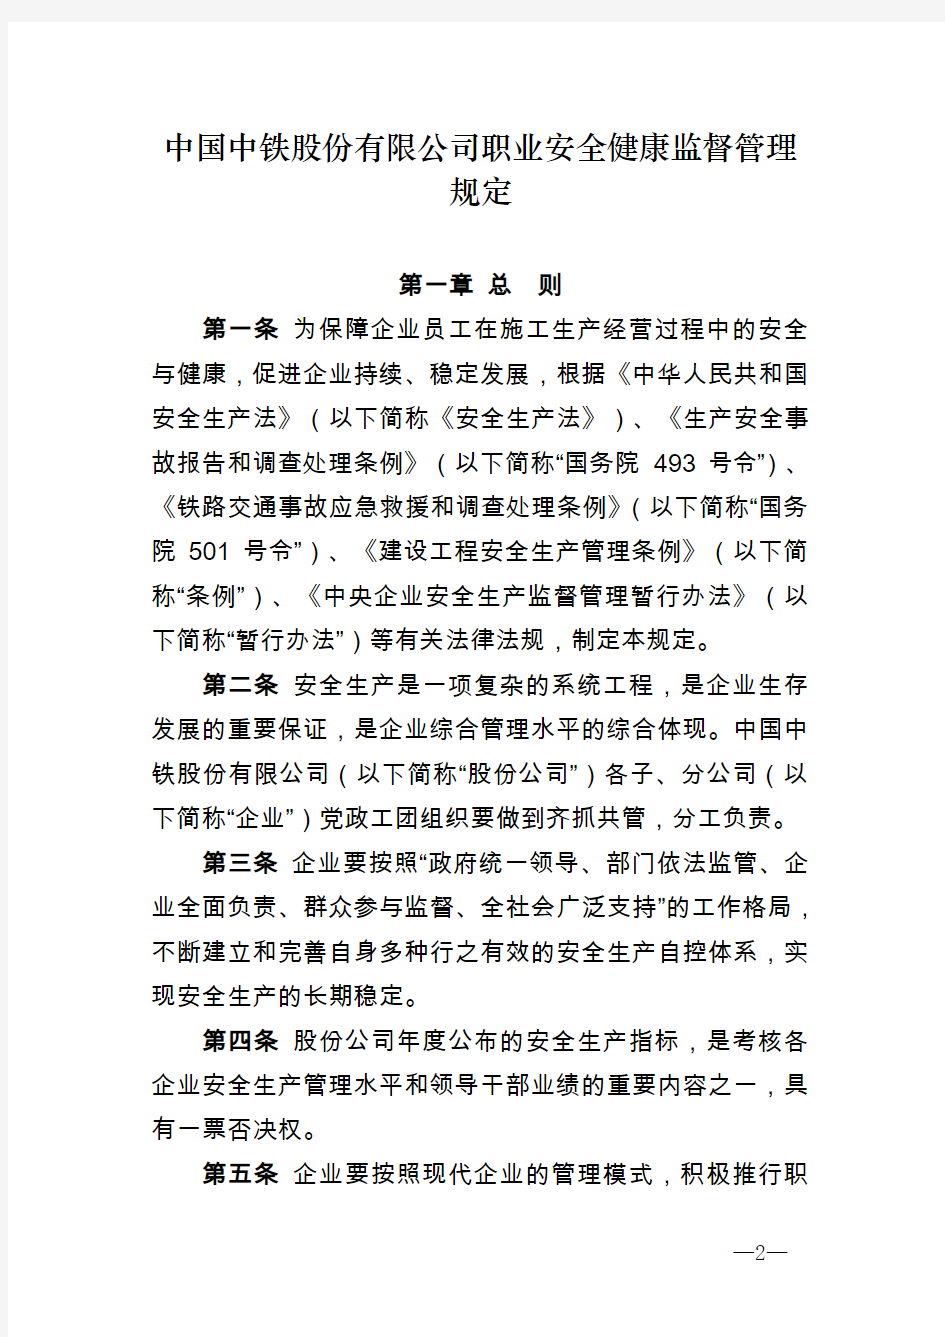 中铁股份安质[2012]11号关于印发《中国中铁股份有限公司职业安全健康监督管理规定》的通知